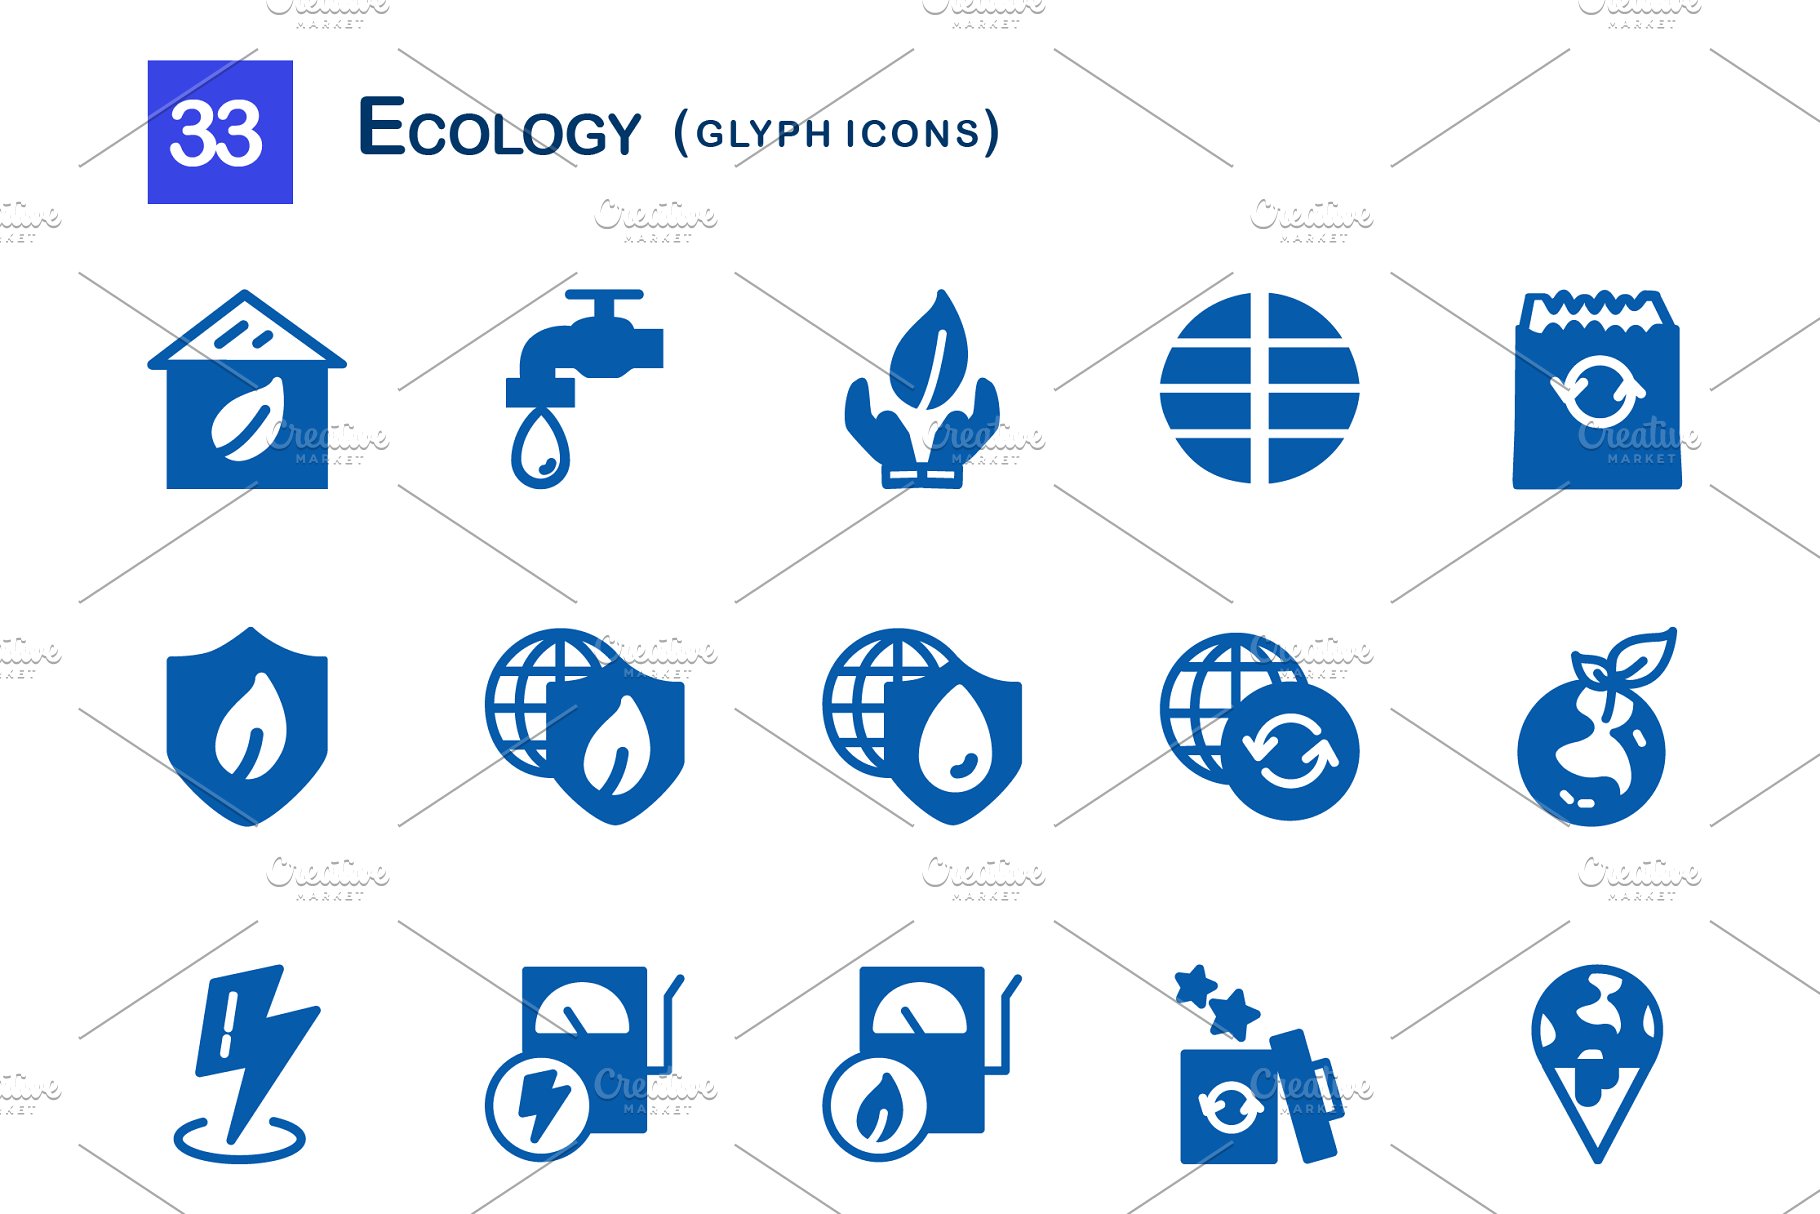 33个生态字体图标集  33 Ecology Glyph Icons插图(1)